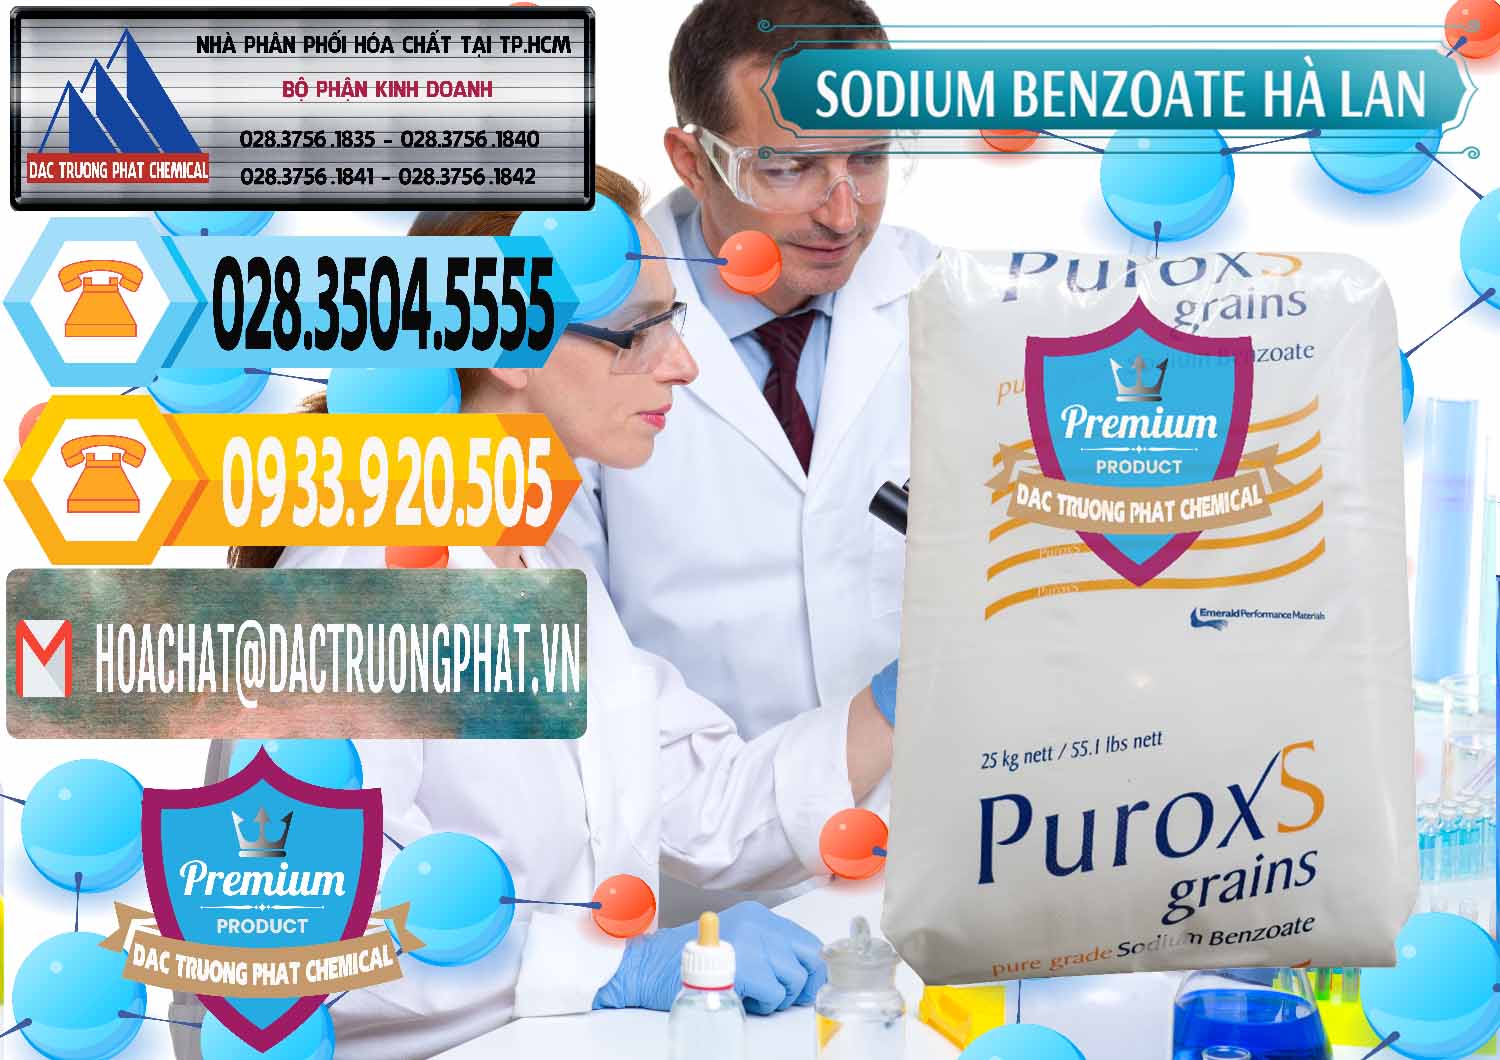 Cty chuyên kinh doanh và bán Sodium Benzoate - Mốc Bột Puroxs Hà Lan Netherlands - 0467 - Nhà nhập khẩu - phân phối hóa chất tại TP.HCM - hoachattayrua.net